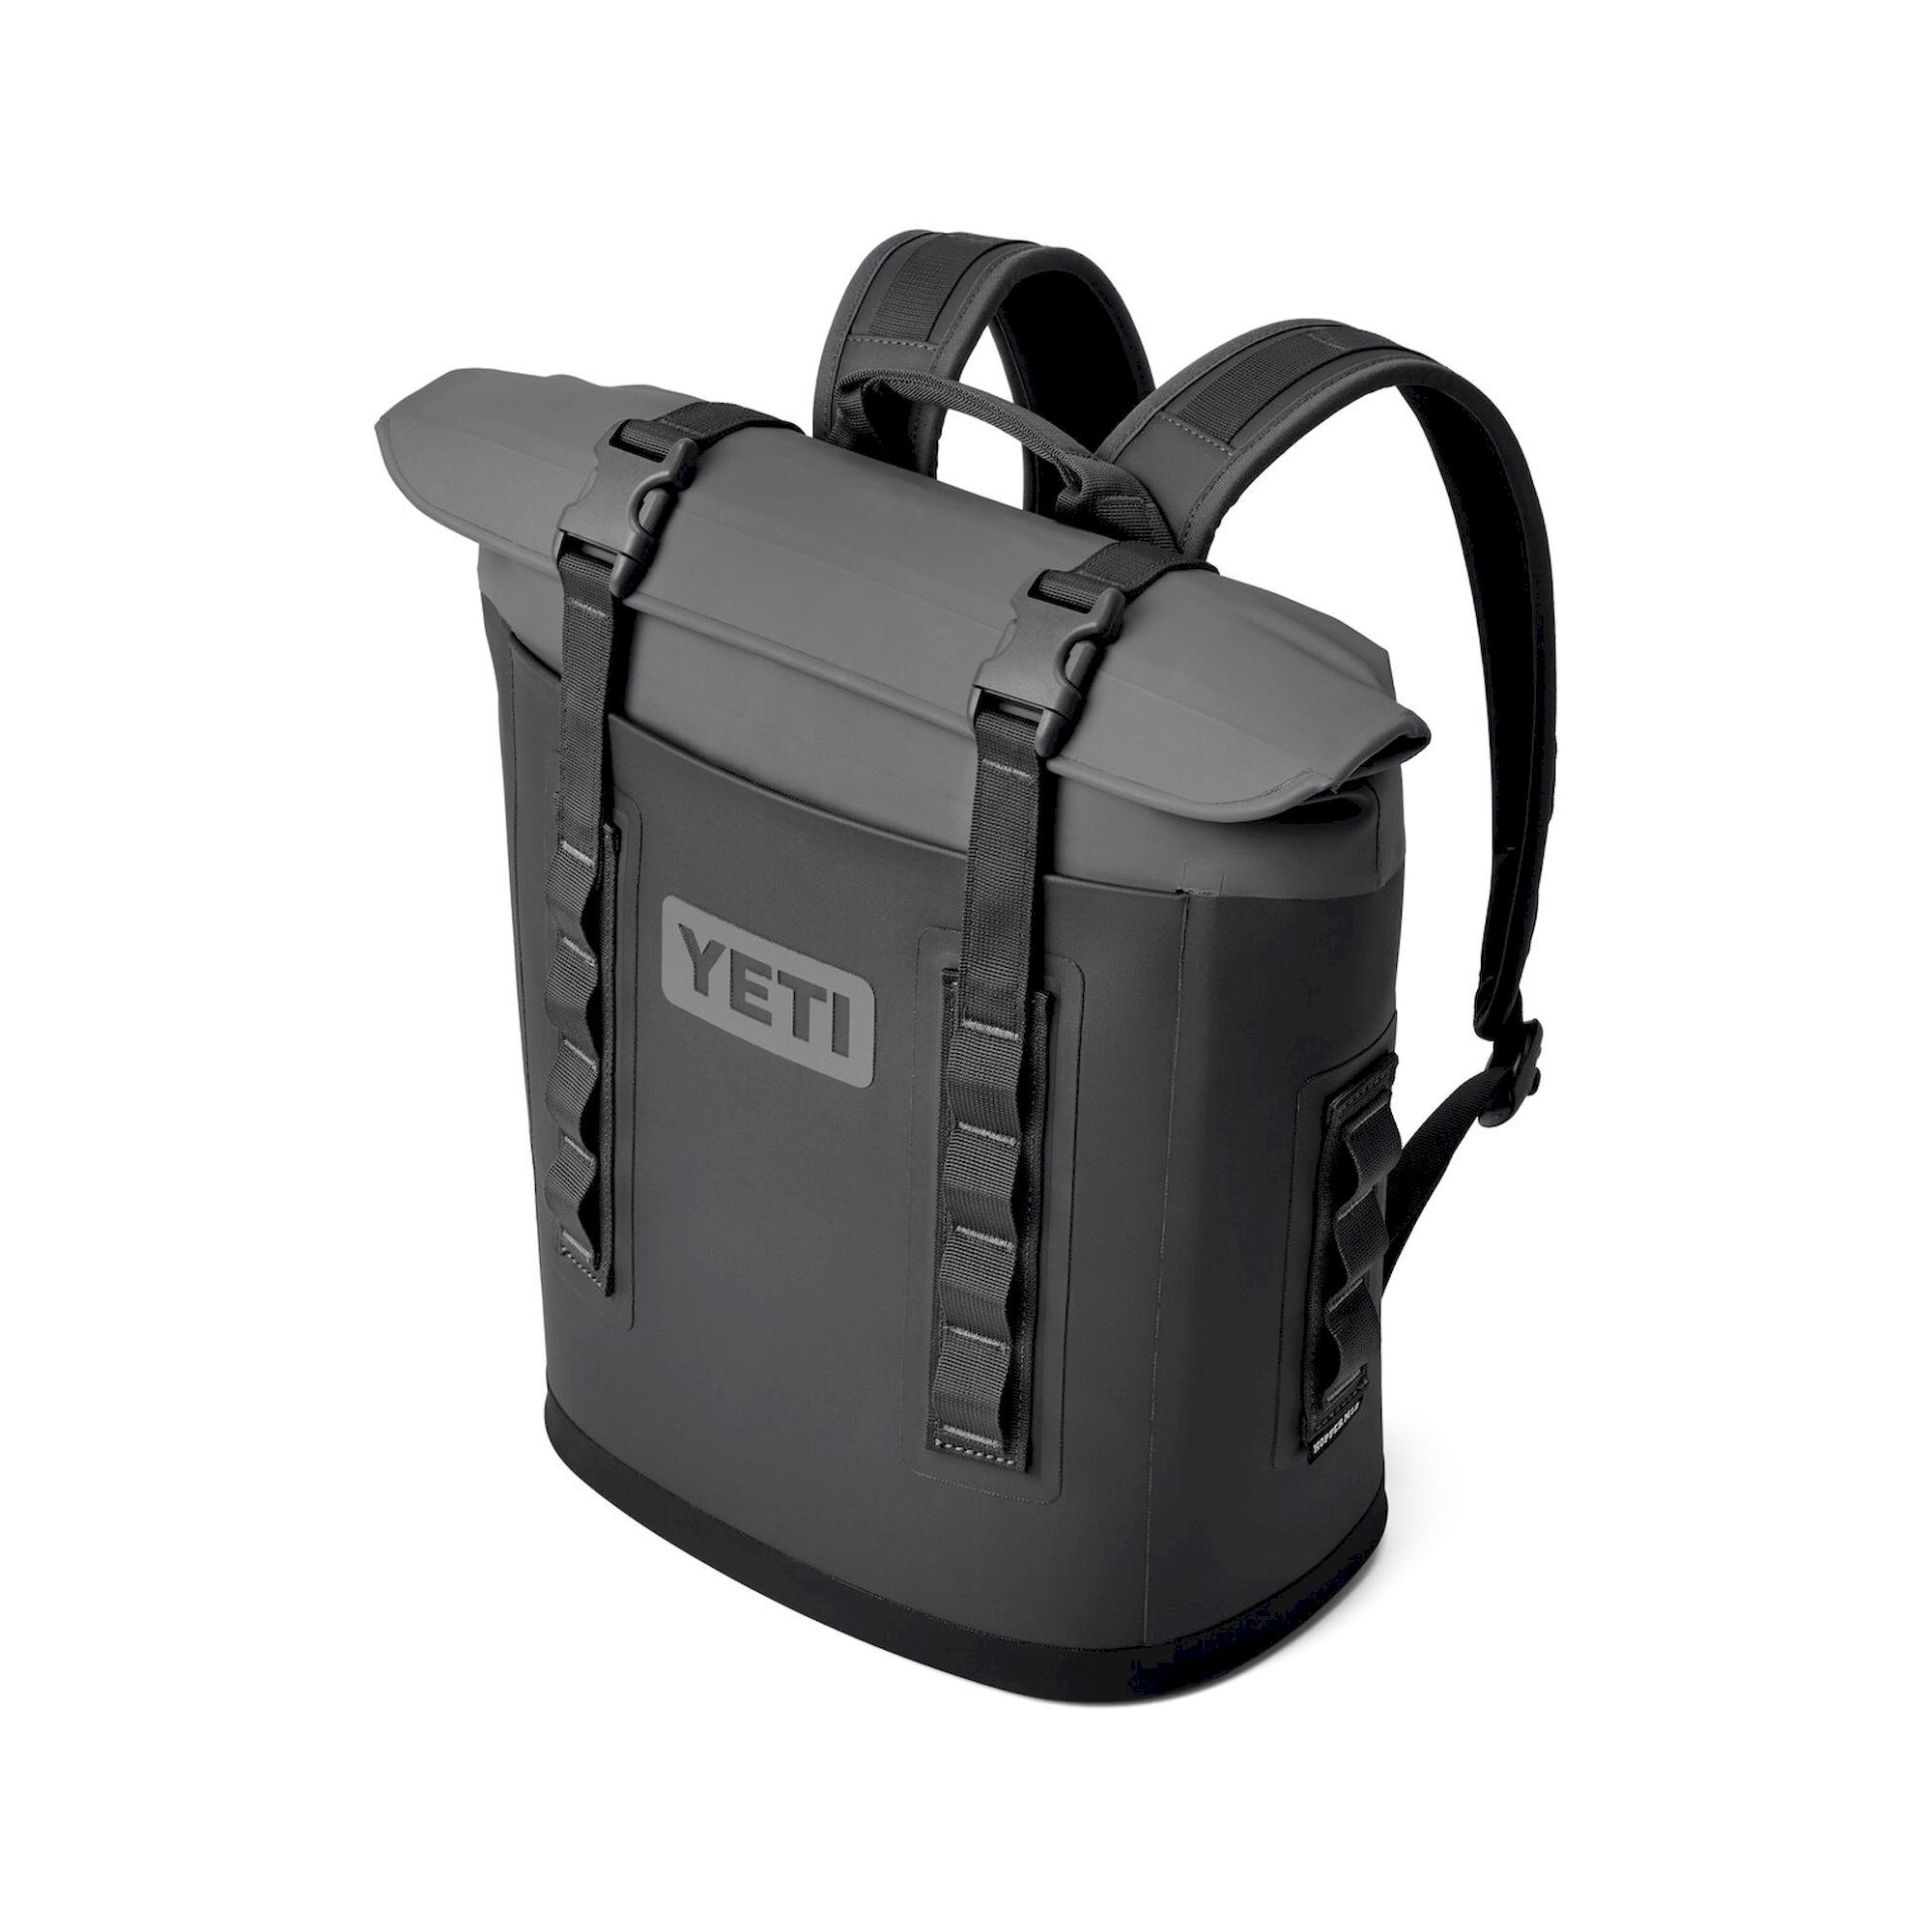 Yeti Hopper Soft Backpack Cooler - Chladící box | Hardloop